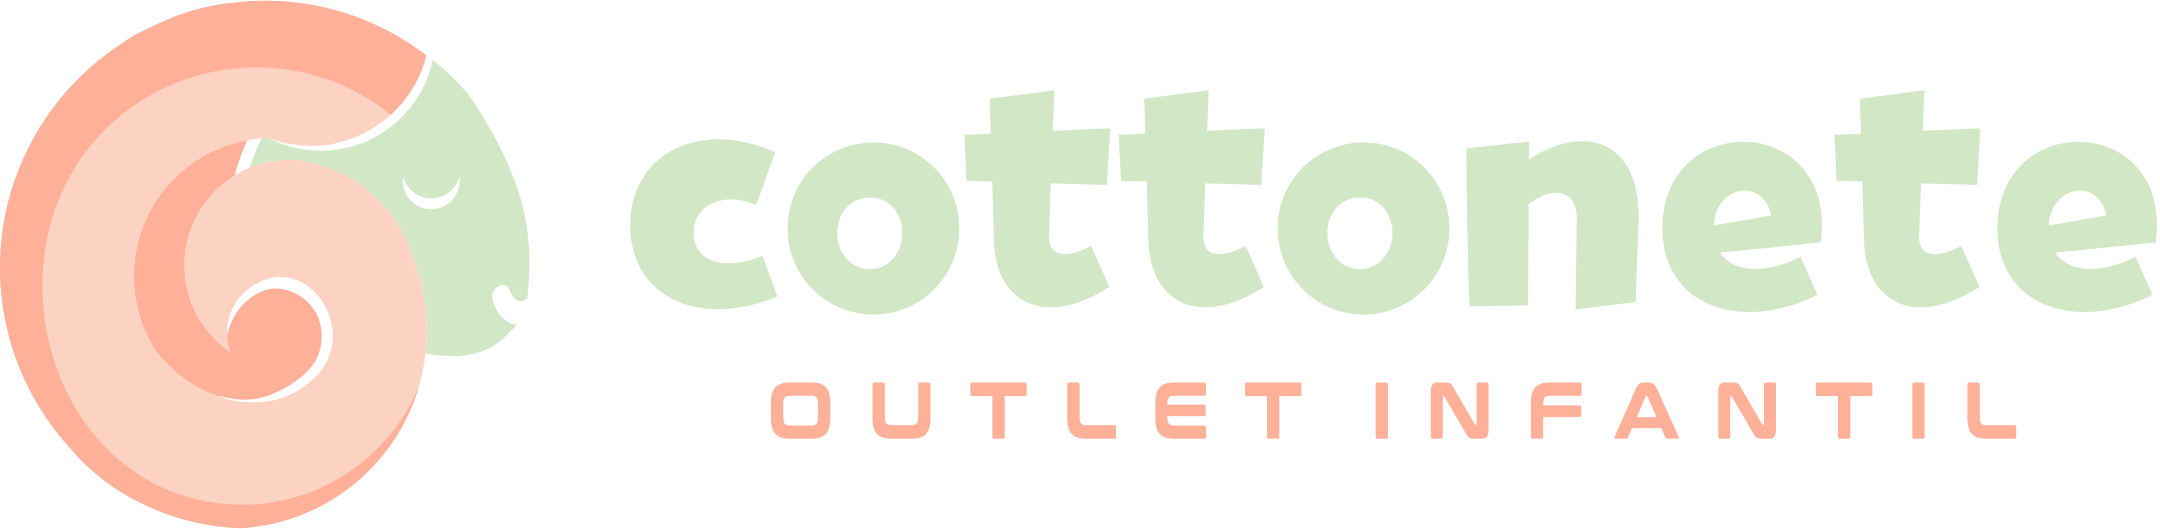 Cottonete - Outlet Infantil